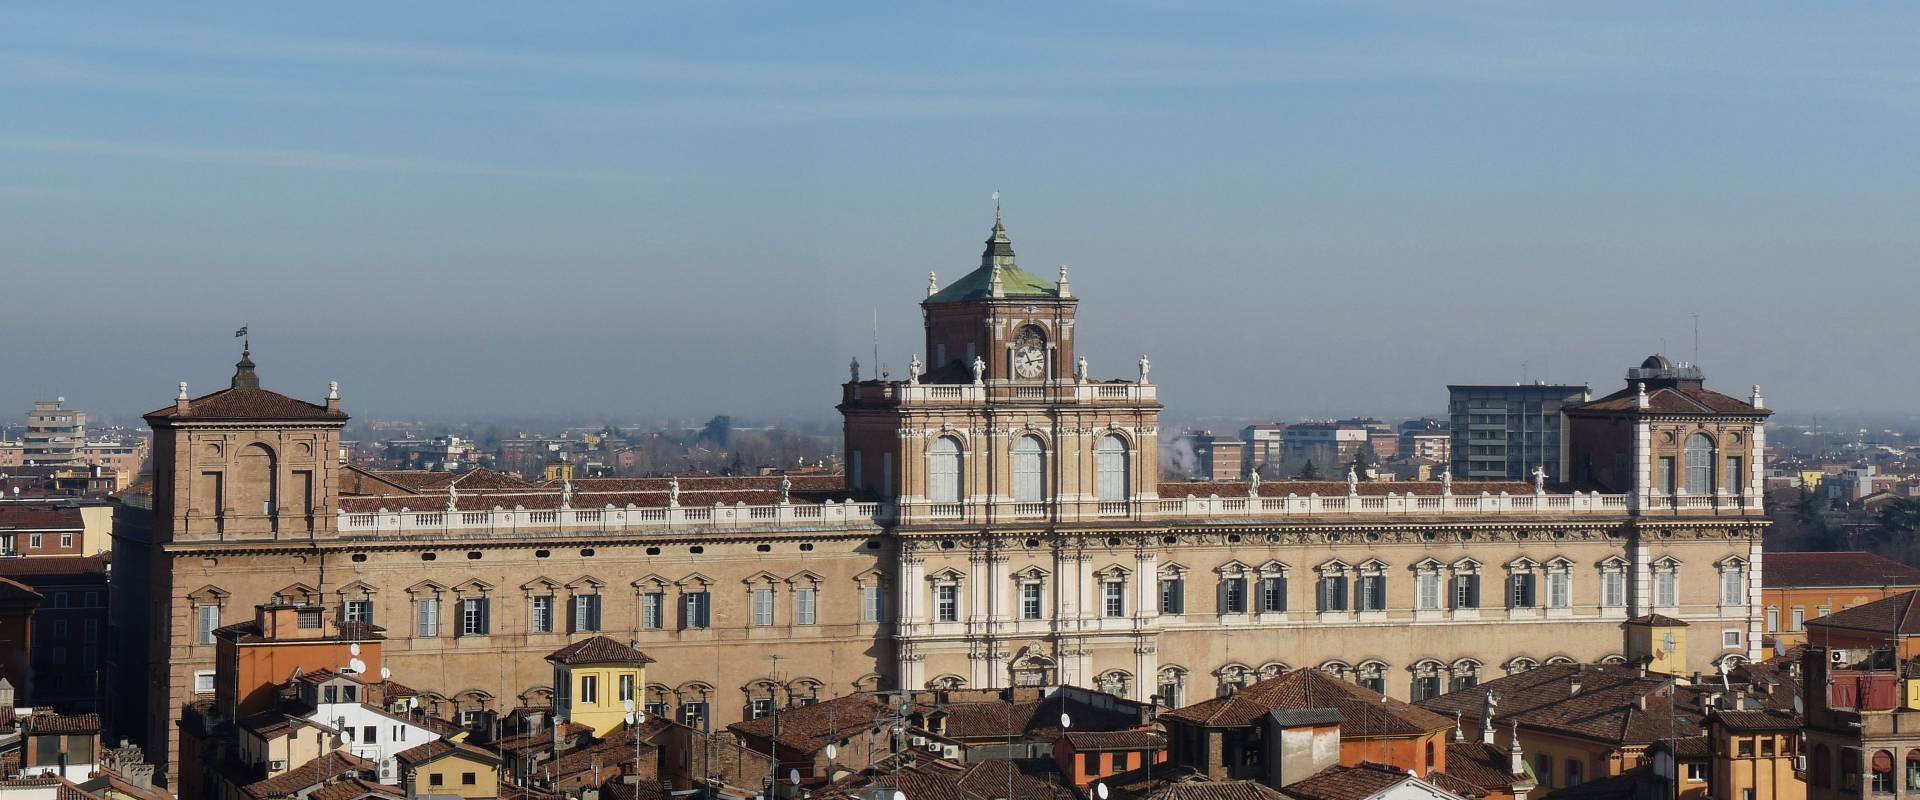 Palazzo Ducale di Modena sede dell'Accademia Militare photo by Mfran22